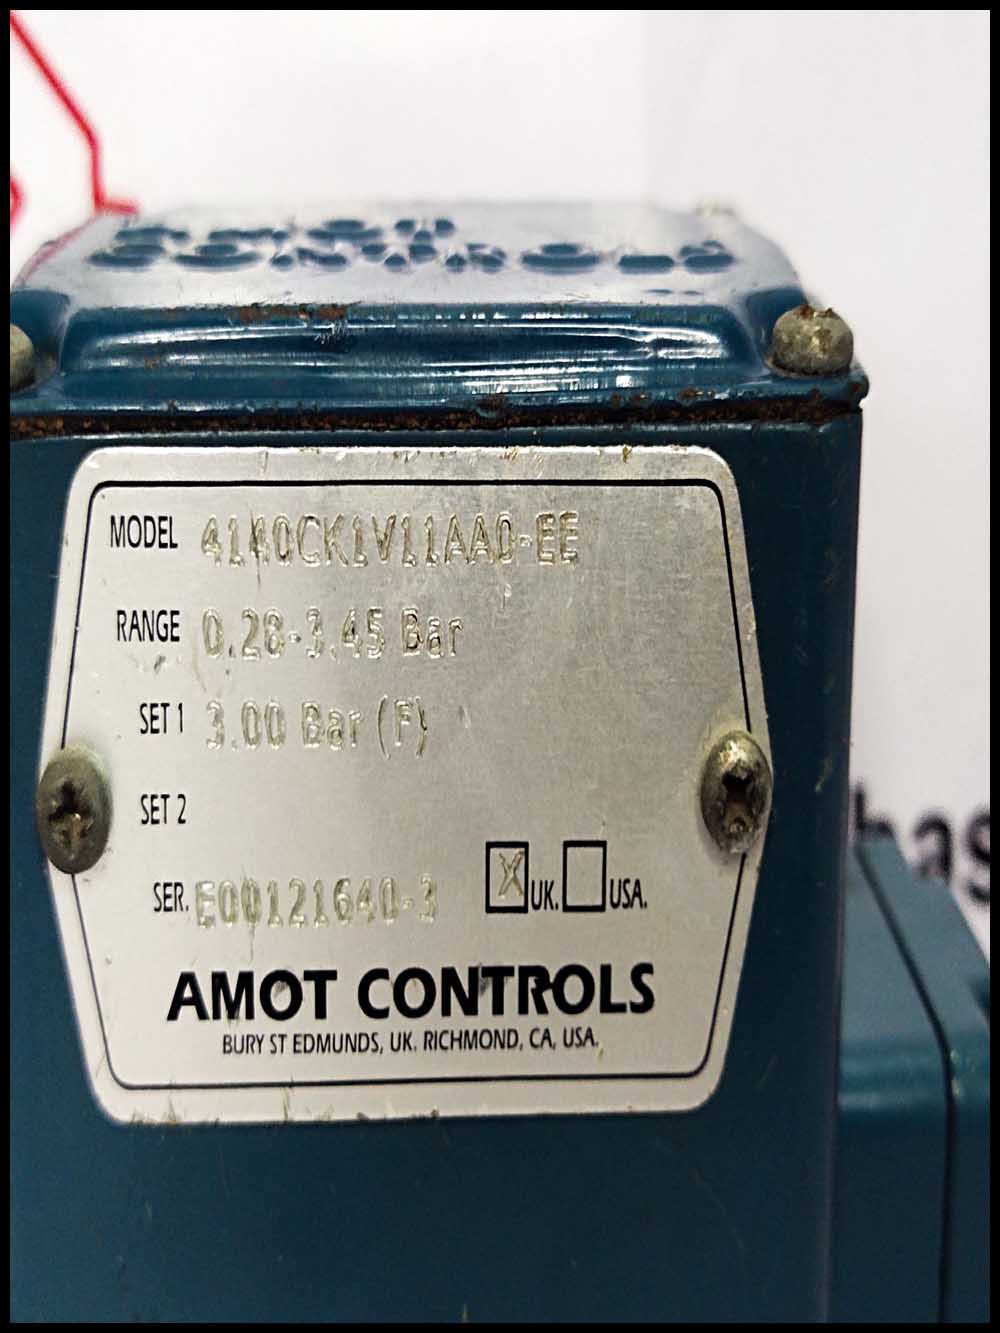 AMOT CONTROLS 4140CK1V11AA0-EE